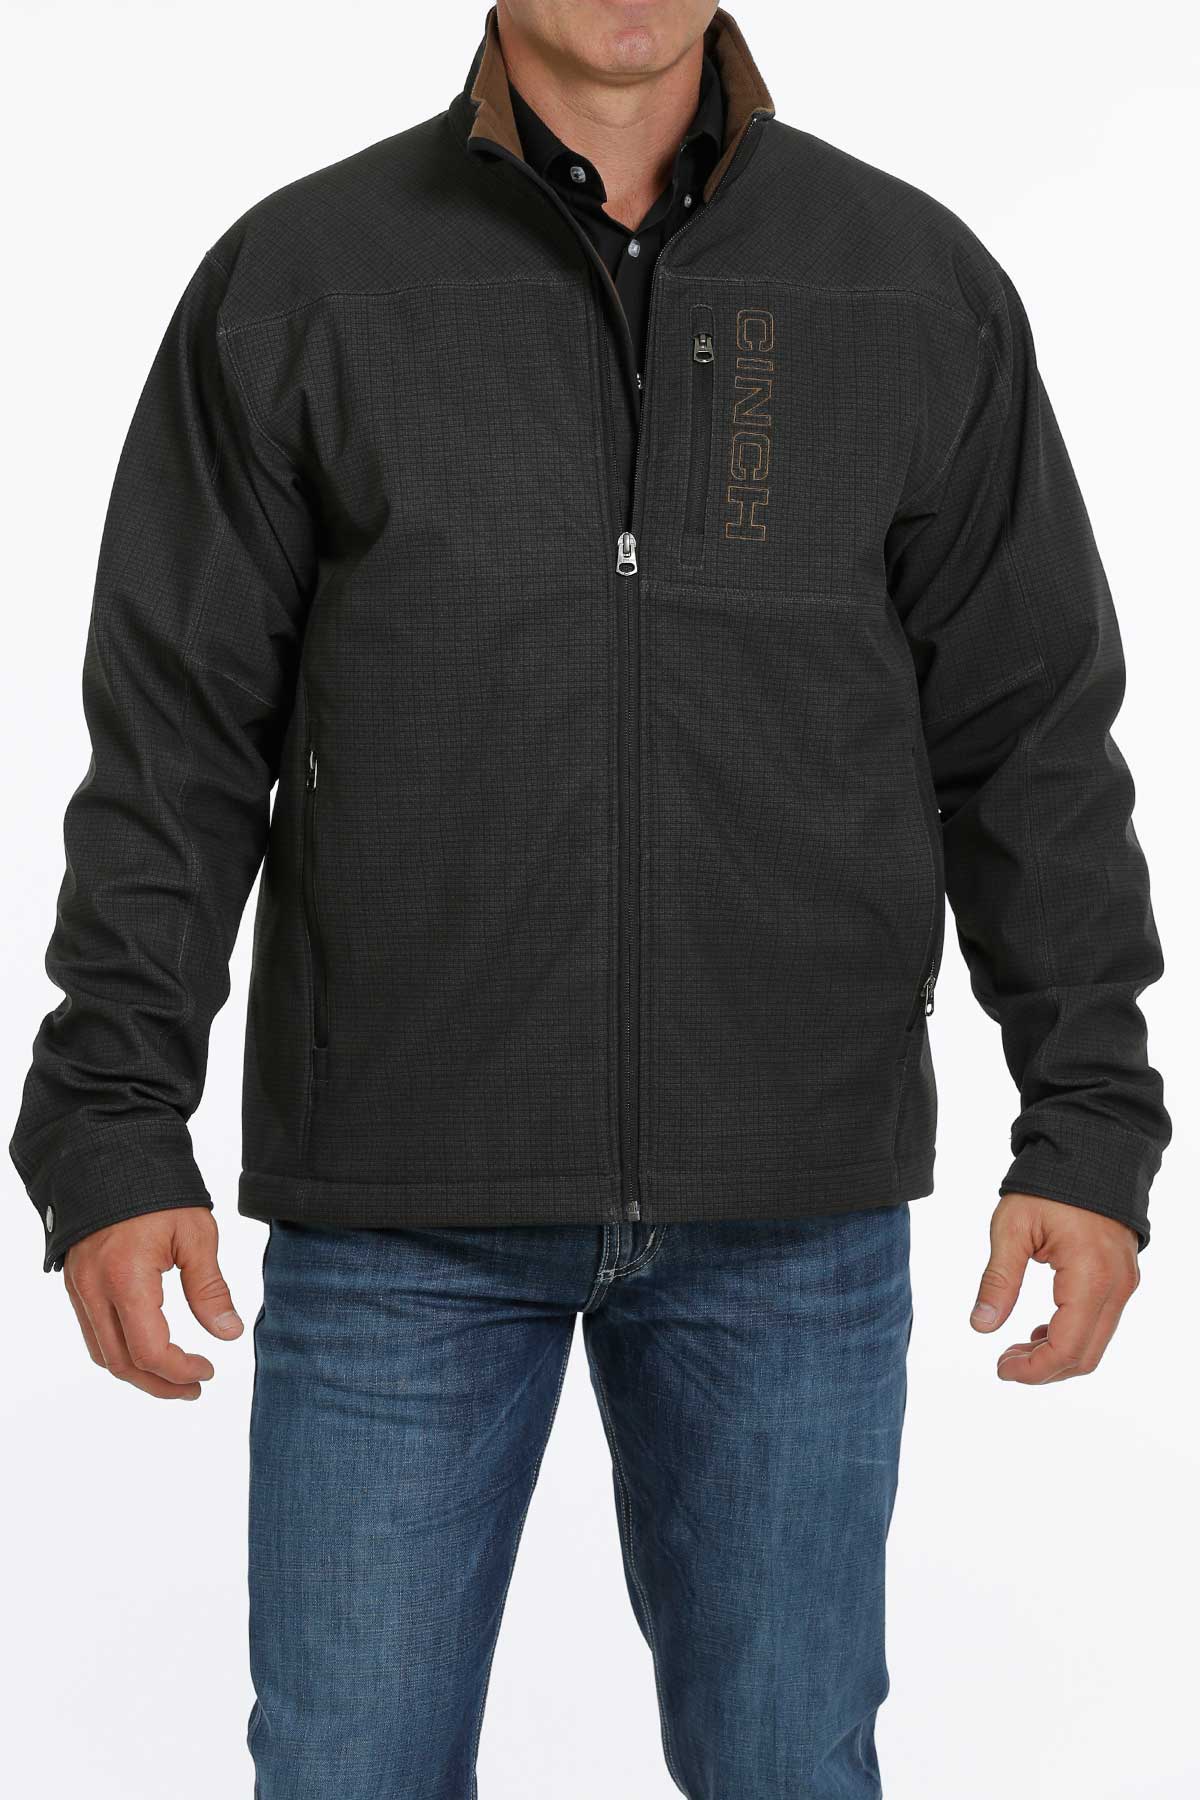 MILLER INTERNATIONAL Outerwear Cinch Men's Concealed Carry Black Printed Bonded Jacket MWJ1537002